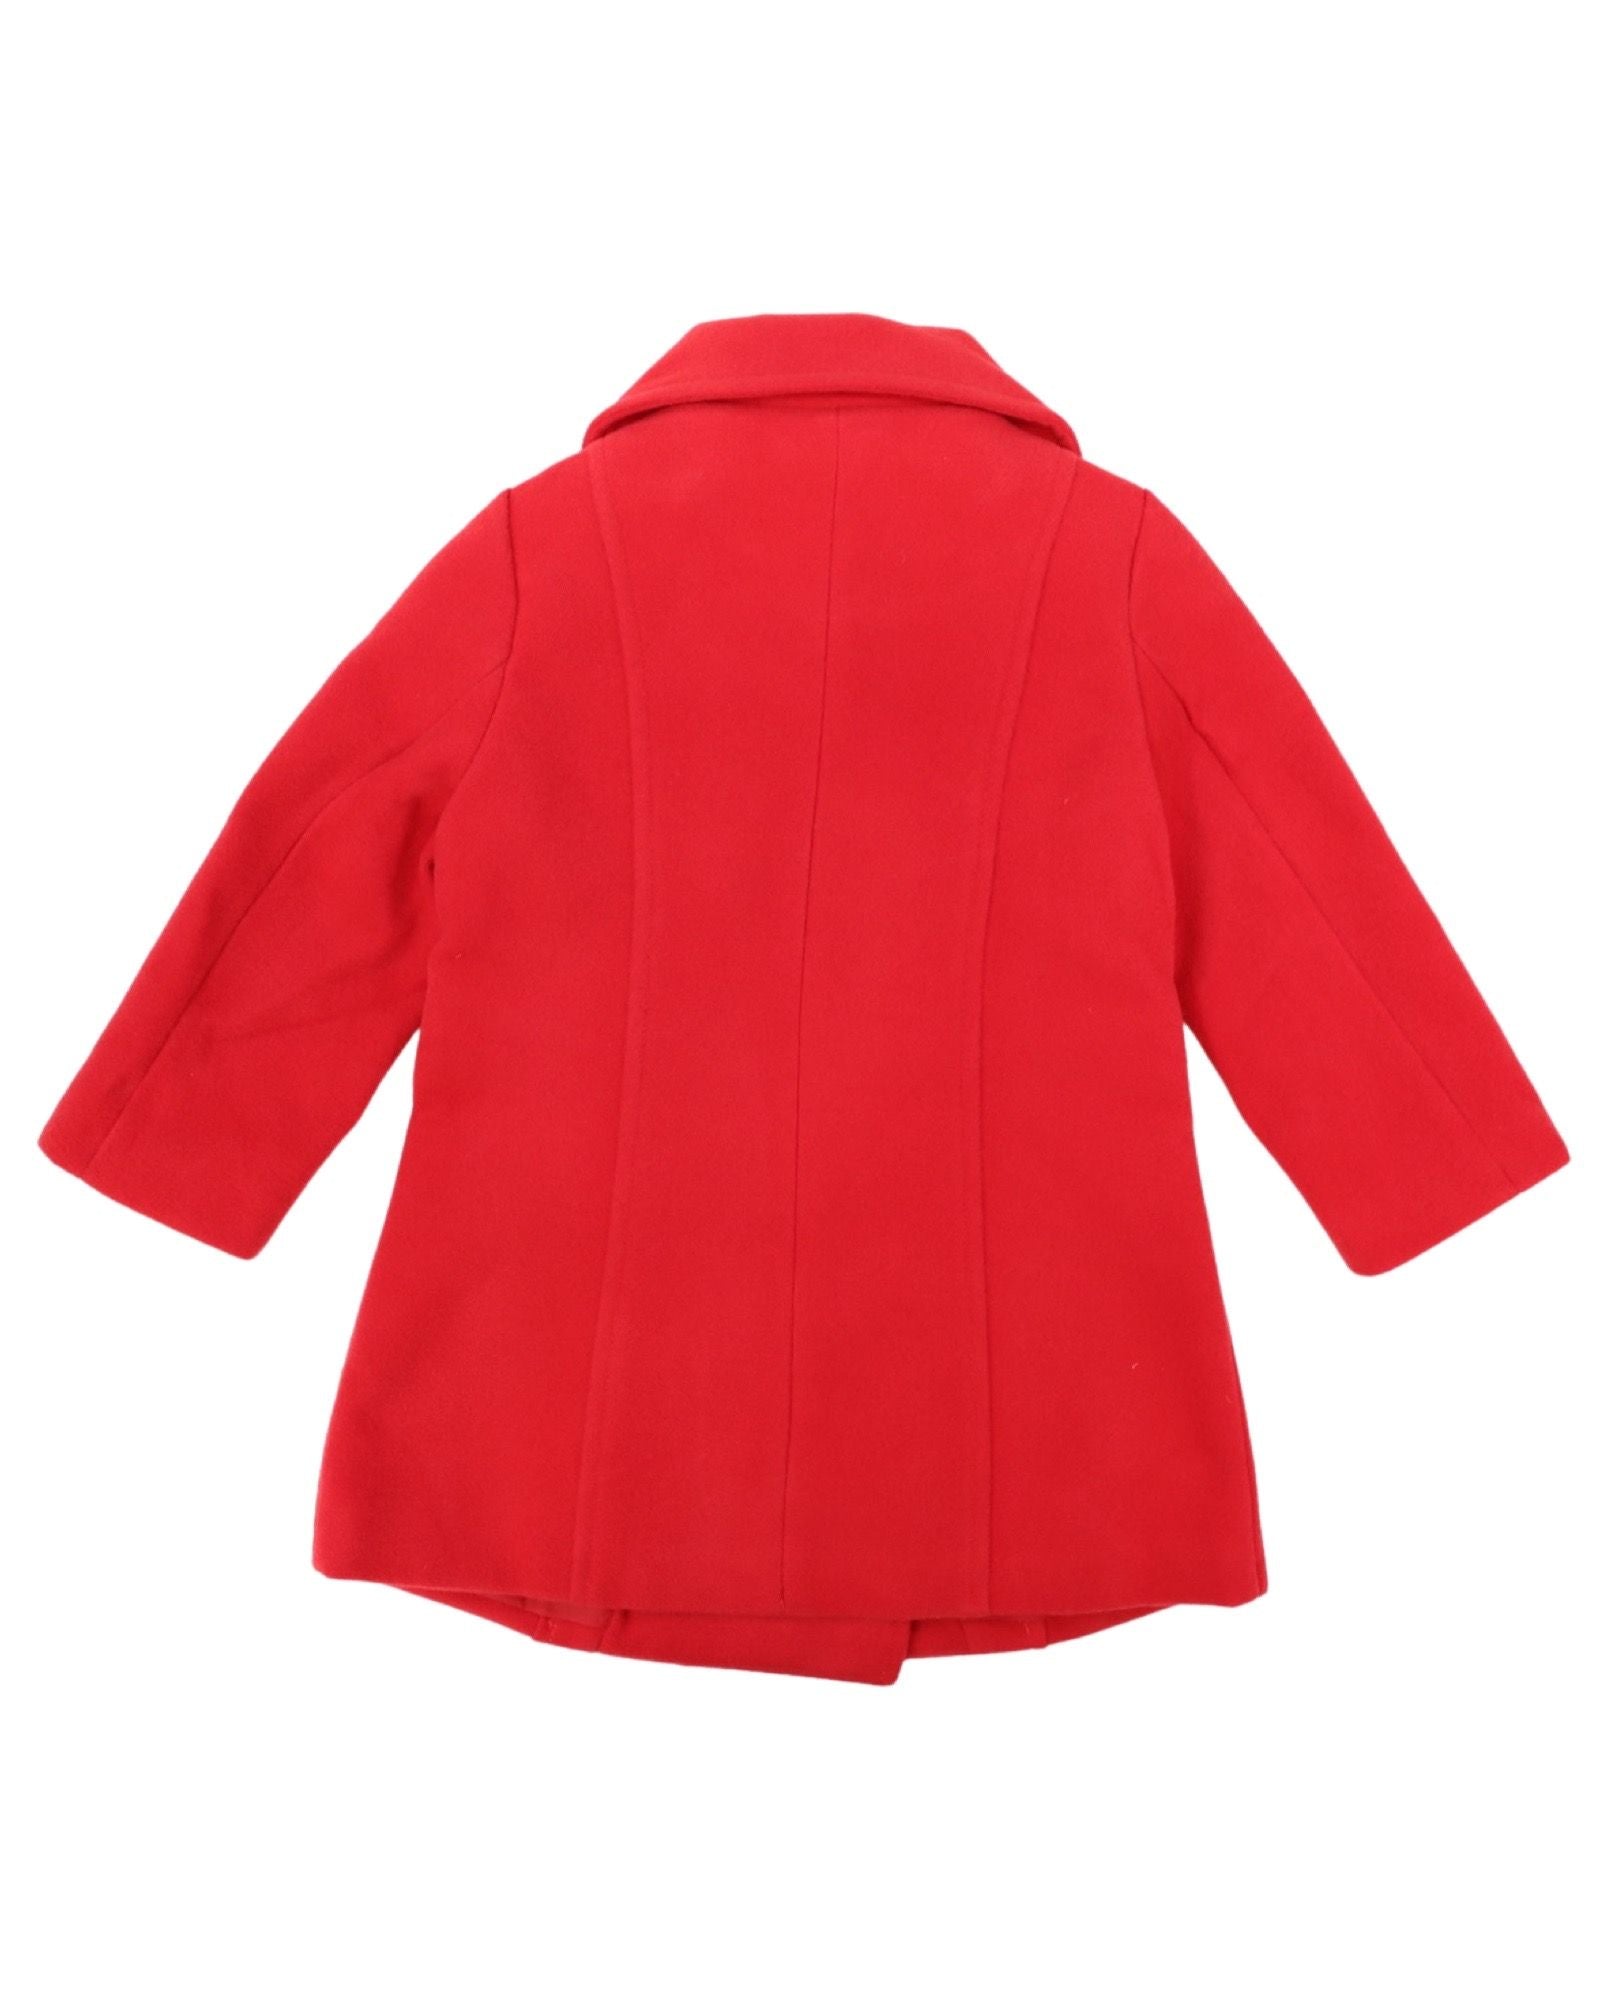 Korango Classic Girls Overcoat Red